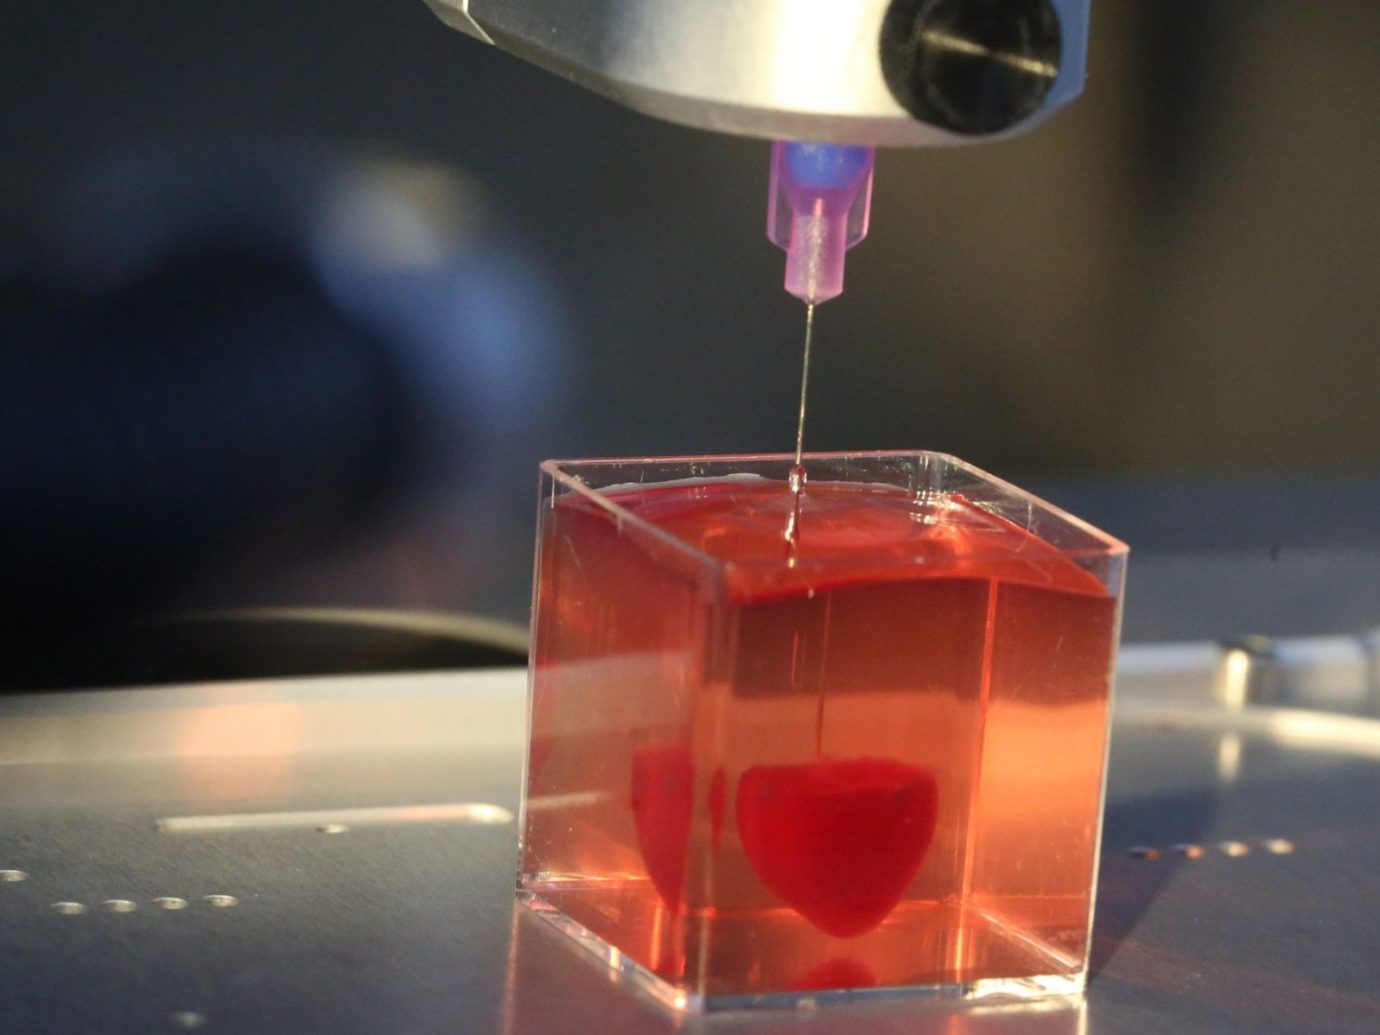 В 2019 году израильские ученые впервые создали на 3D-принтере человеческое сердце с кровеносными сосудами и клеткам. Сделано оно было в миниатюре, но, по словам исследователей, для печати сердца обычного размера может быть использована та же самая технология. Напечатанный орган состоит из жировых клеток пациента, которые были преобразованы в стволовые клетки сердечно-сосудистой мышцы, а затем смешаны с соединительной тканью и помещены в 3D-принтер / Фото: jta.org